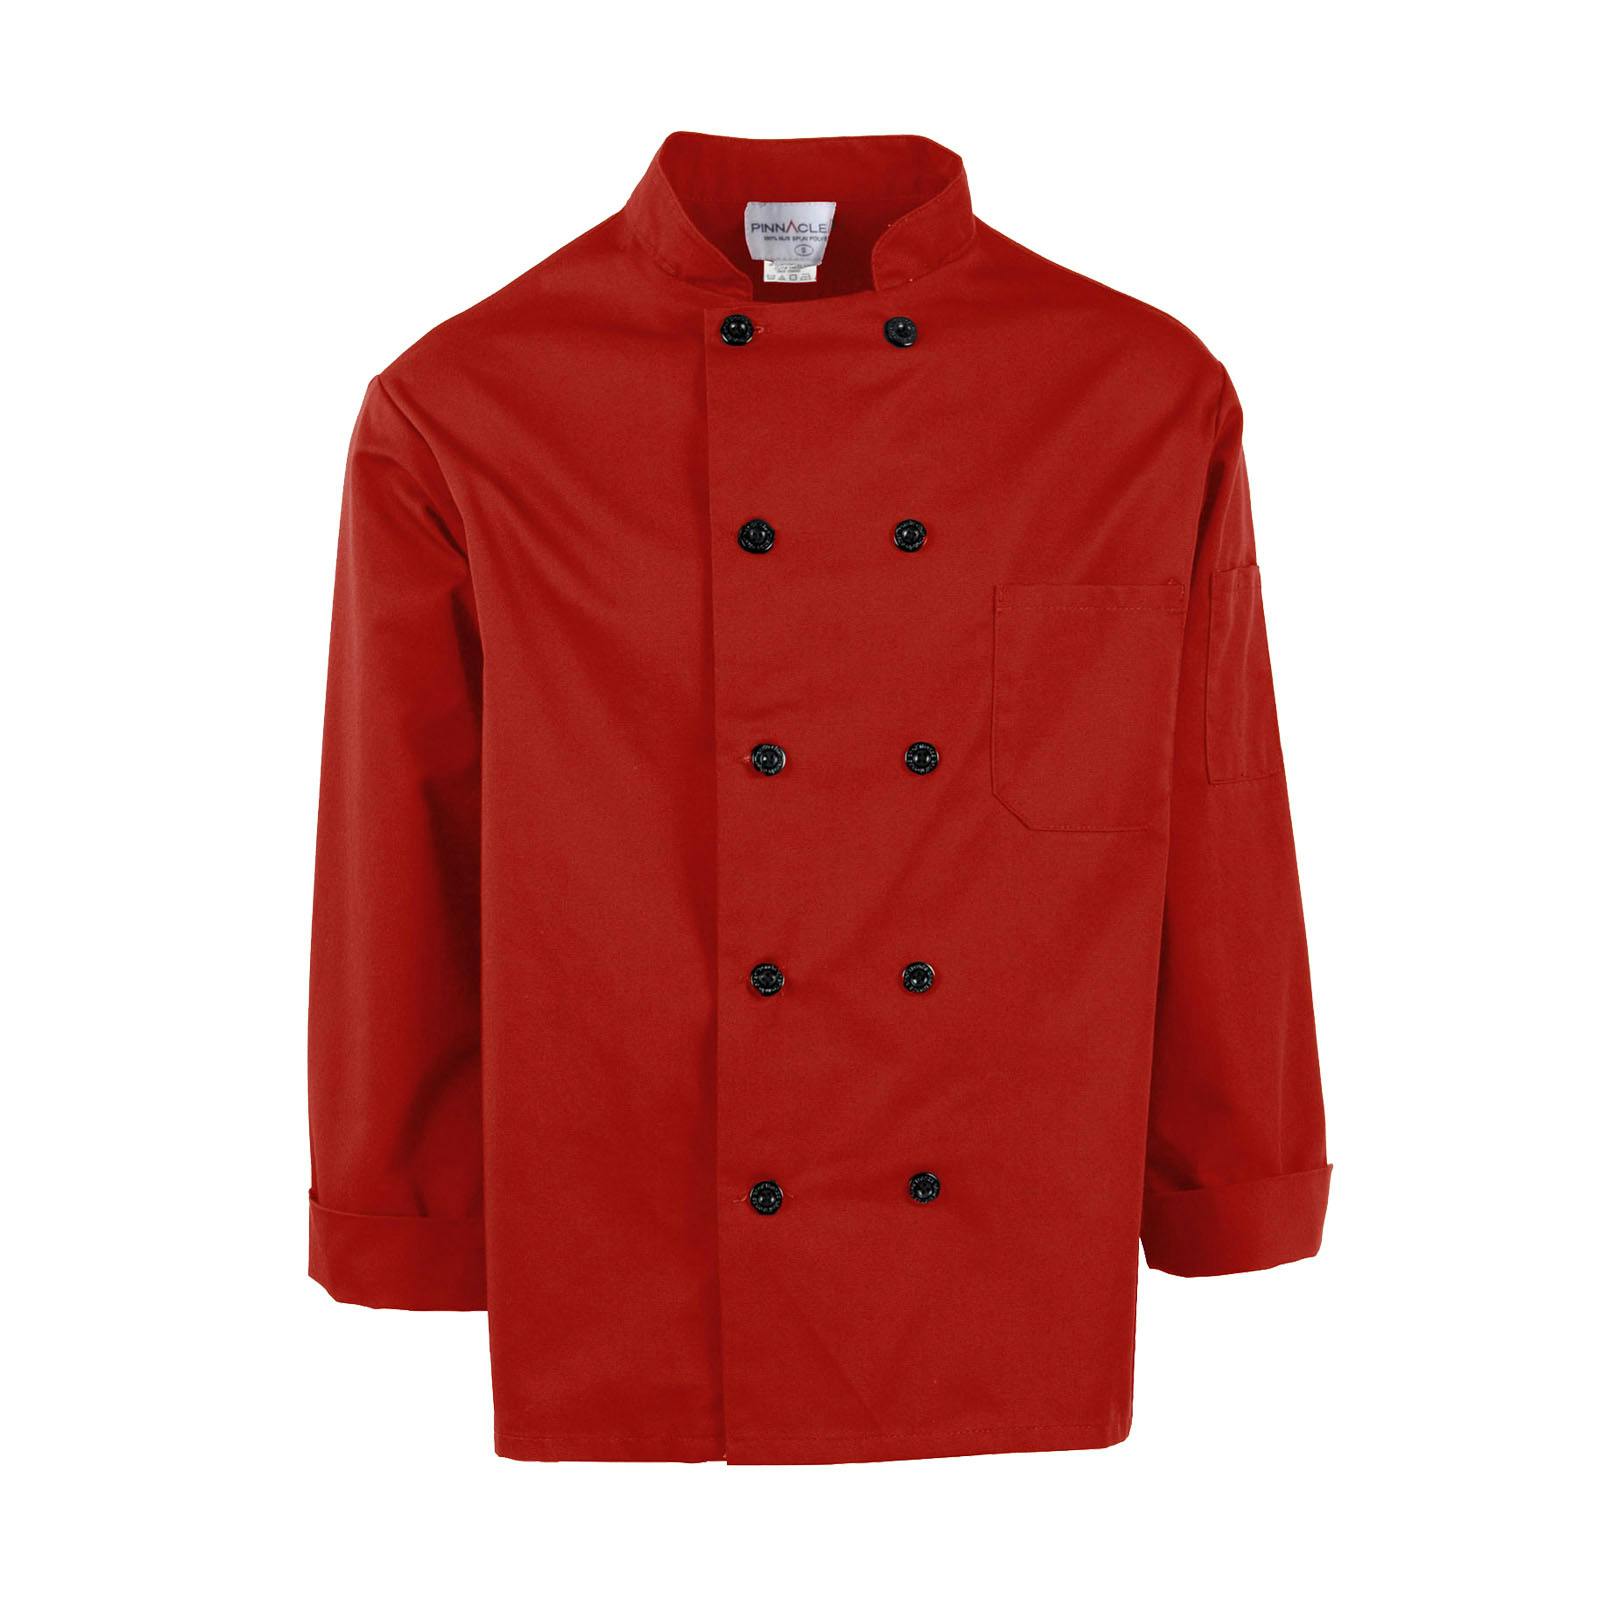 Pinnacle Red Long Sleeve Chef Coat